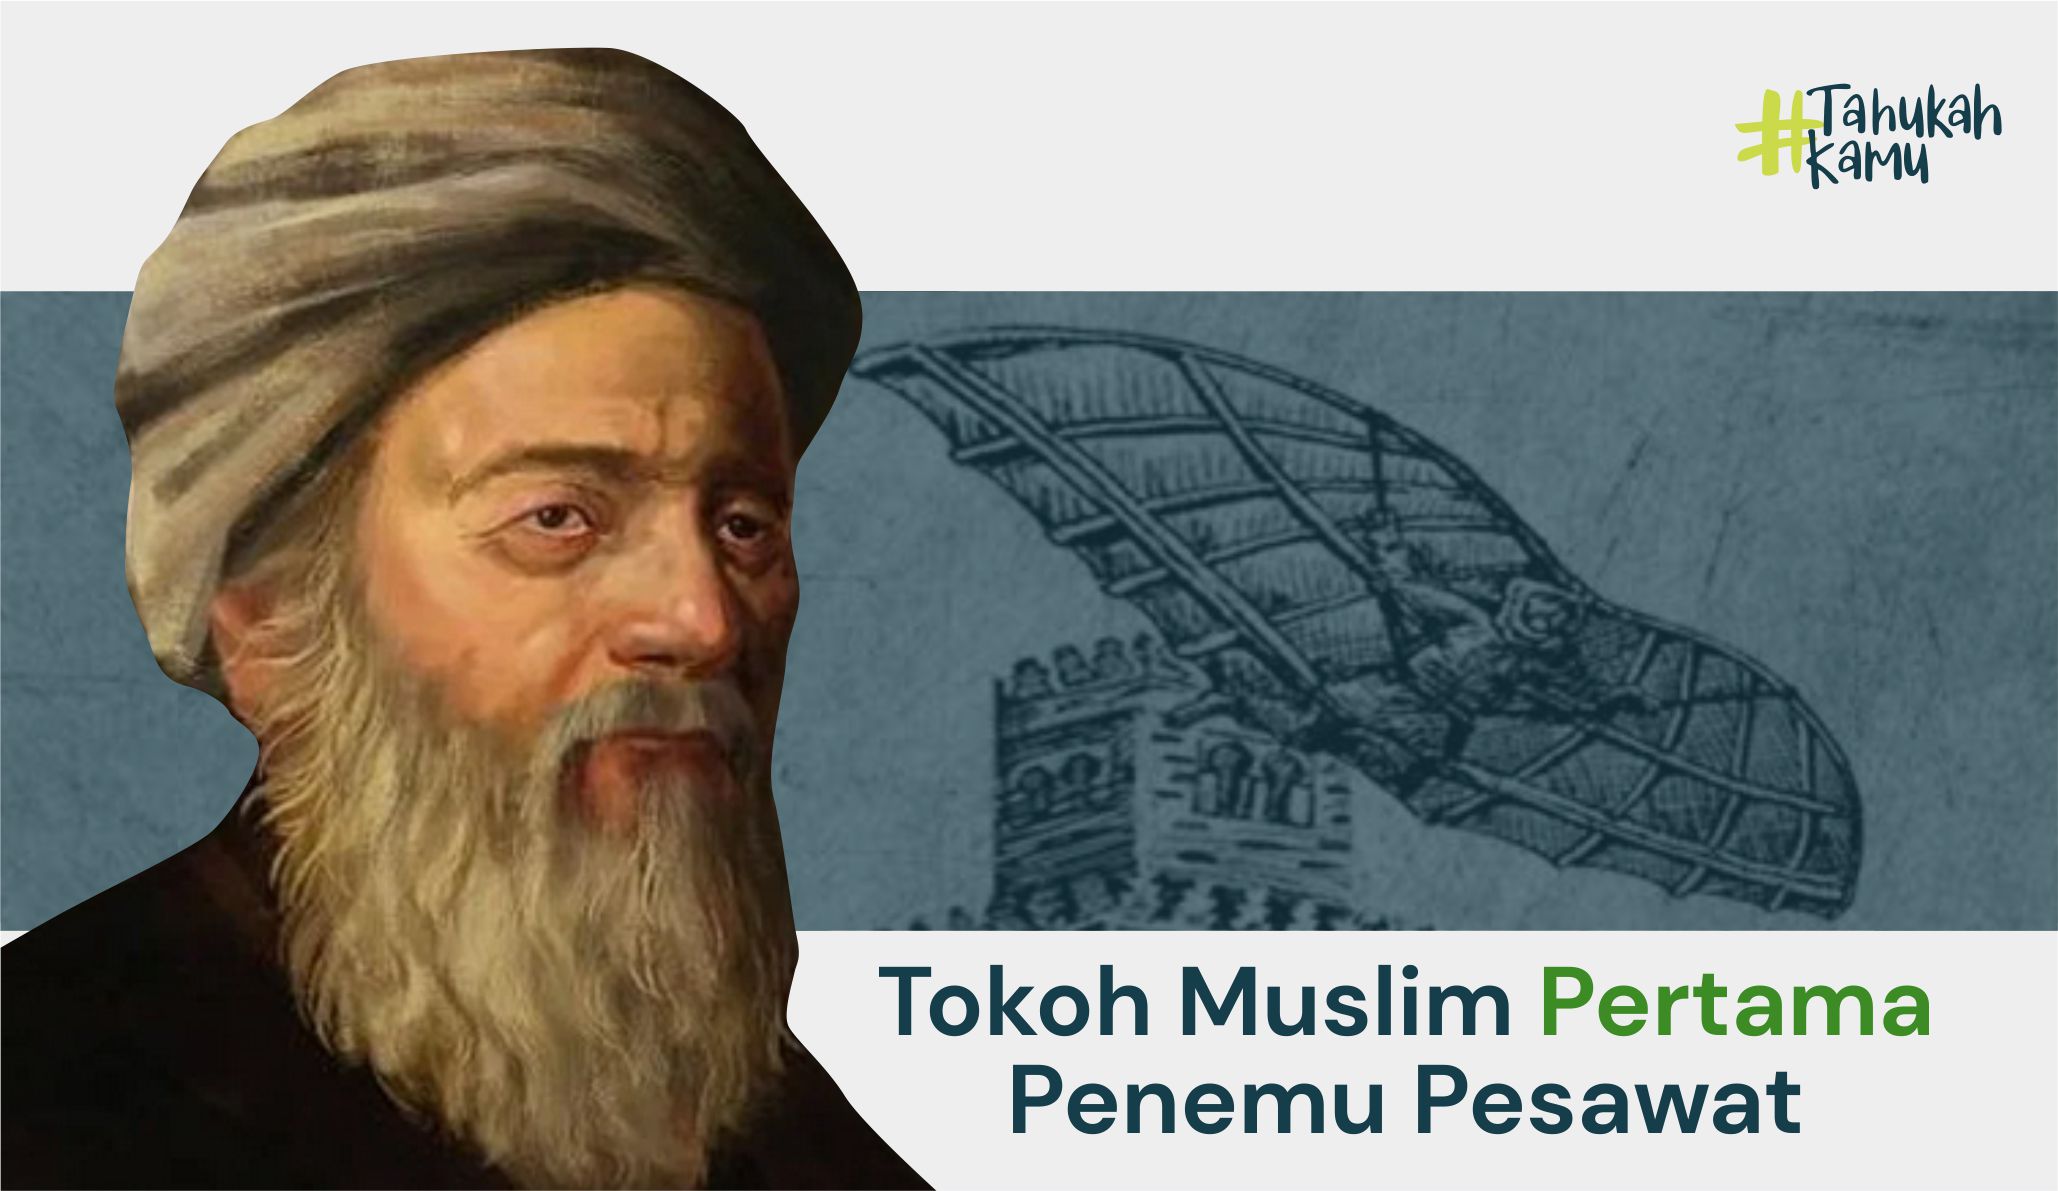 Tokoh Muslim Pertama Penemu Pesawat